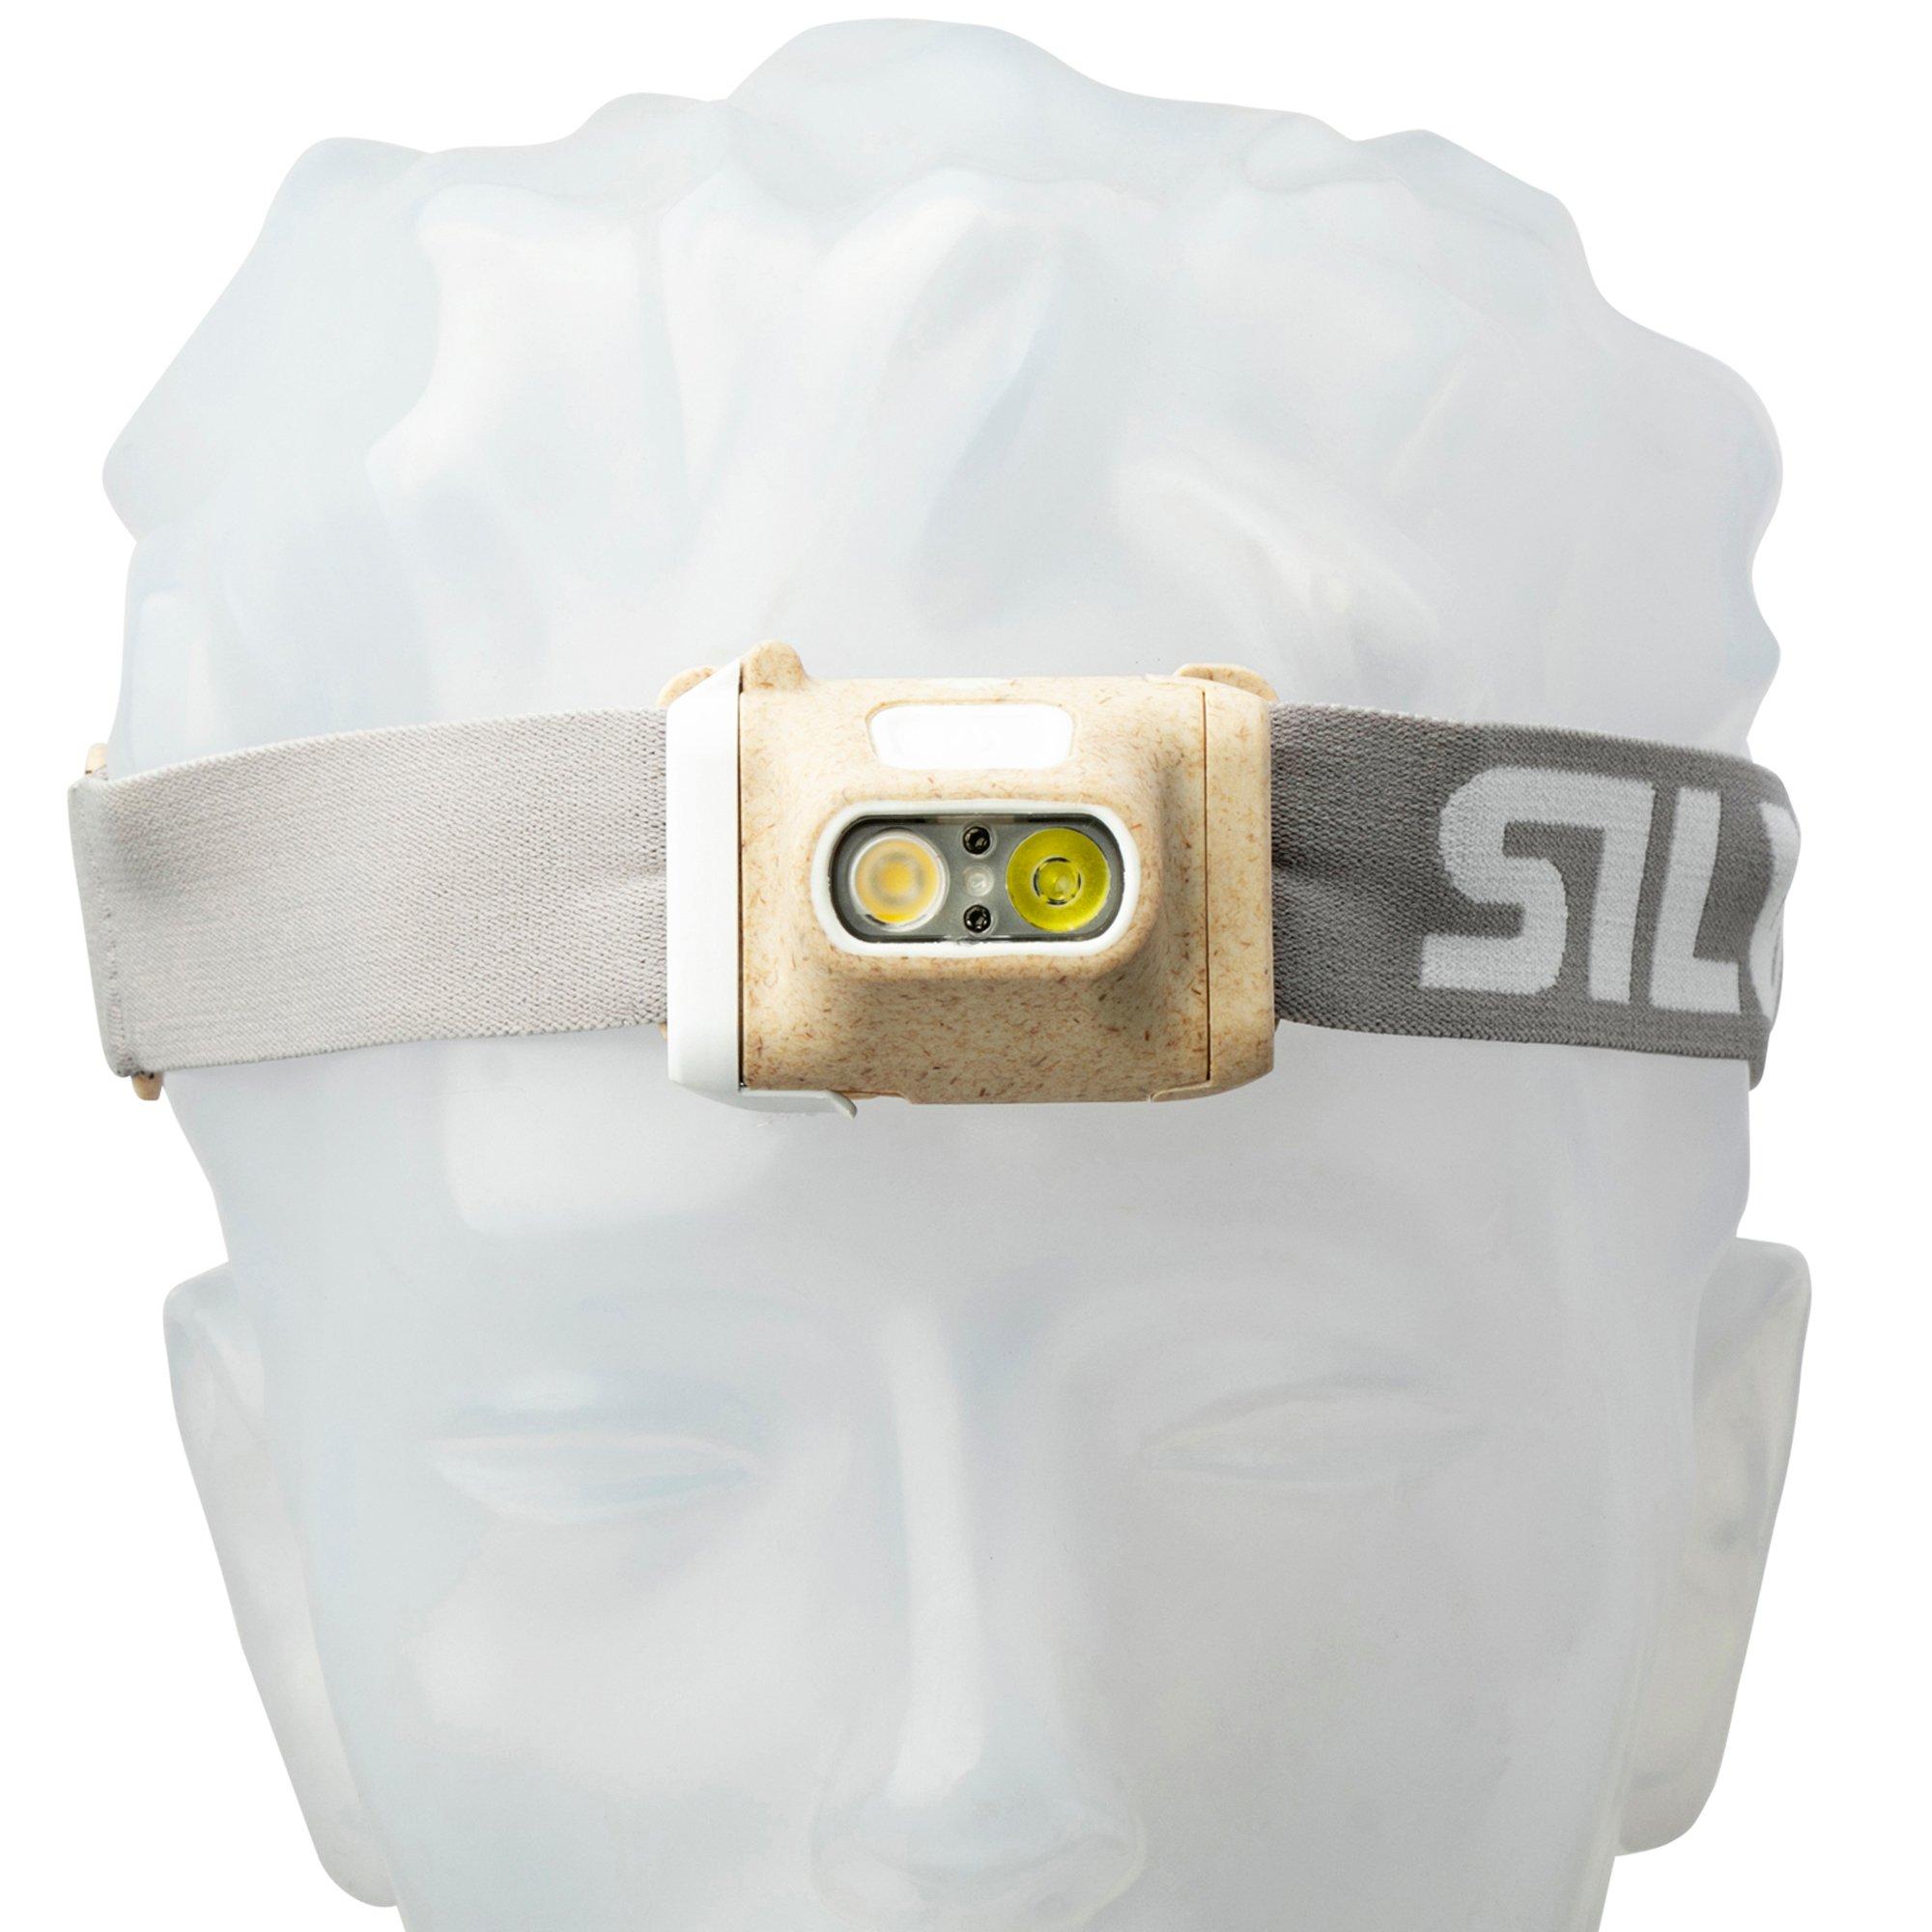 Silva Scout 3XT Stirnlampe mit Rotlicht Batterie-Pack jetzt kaufen